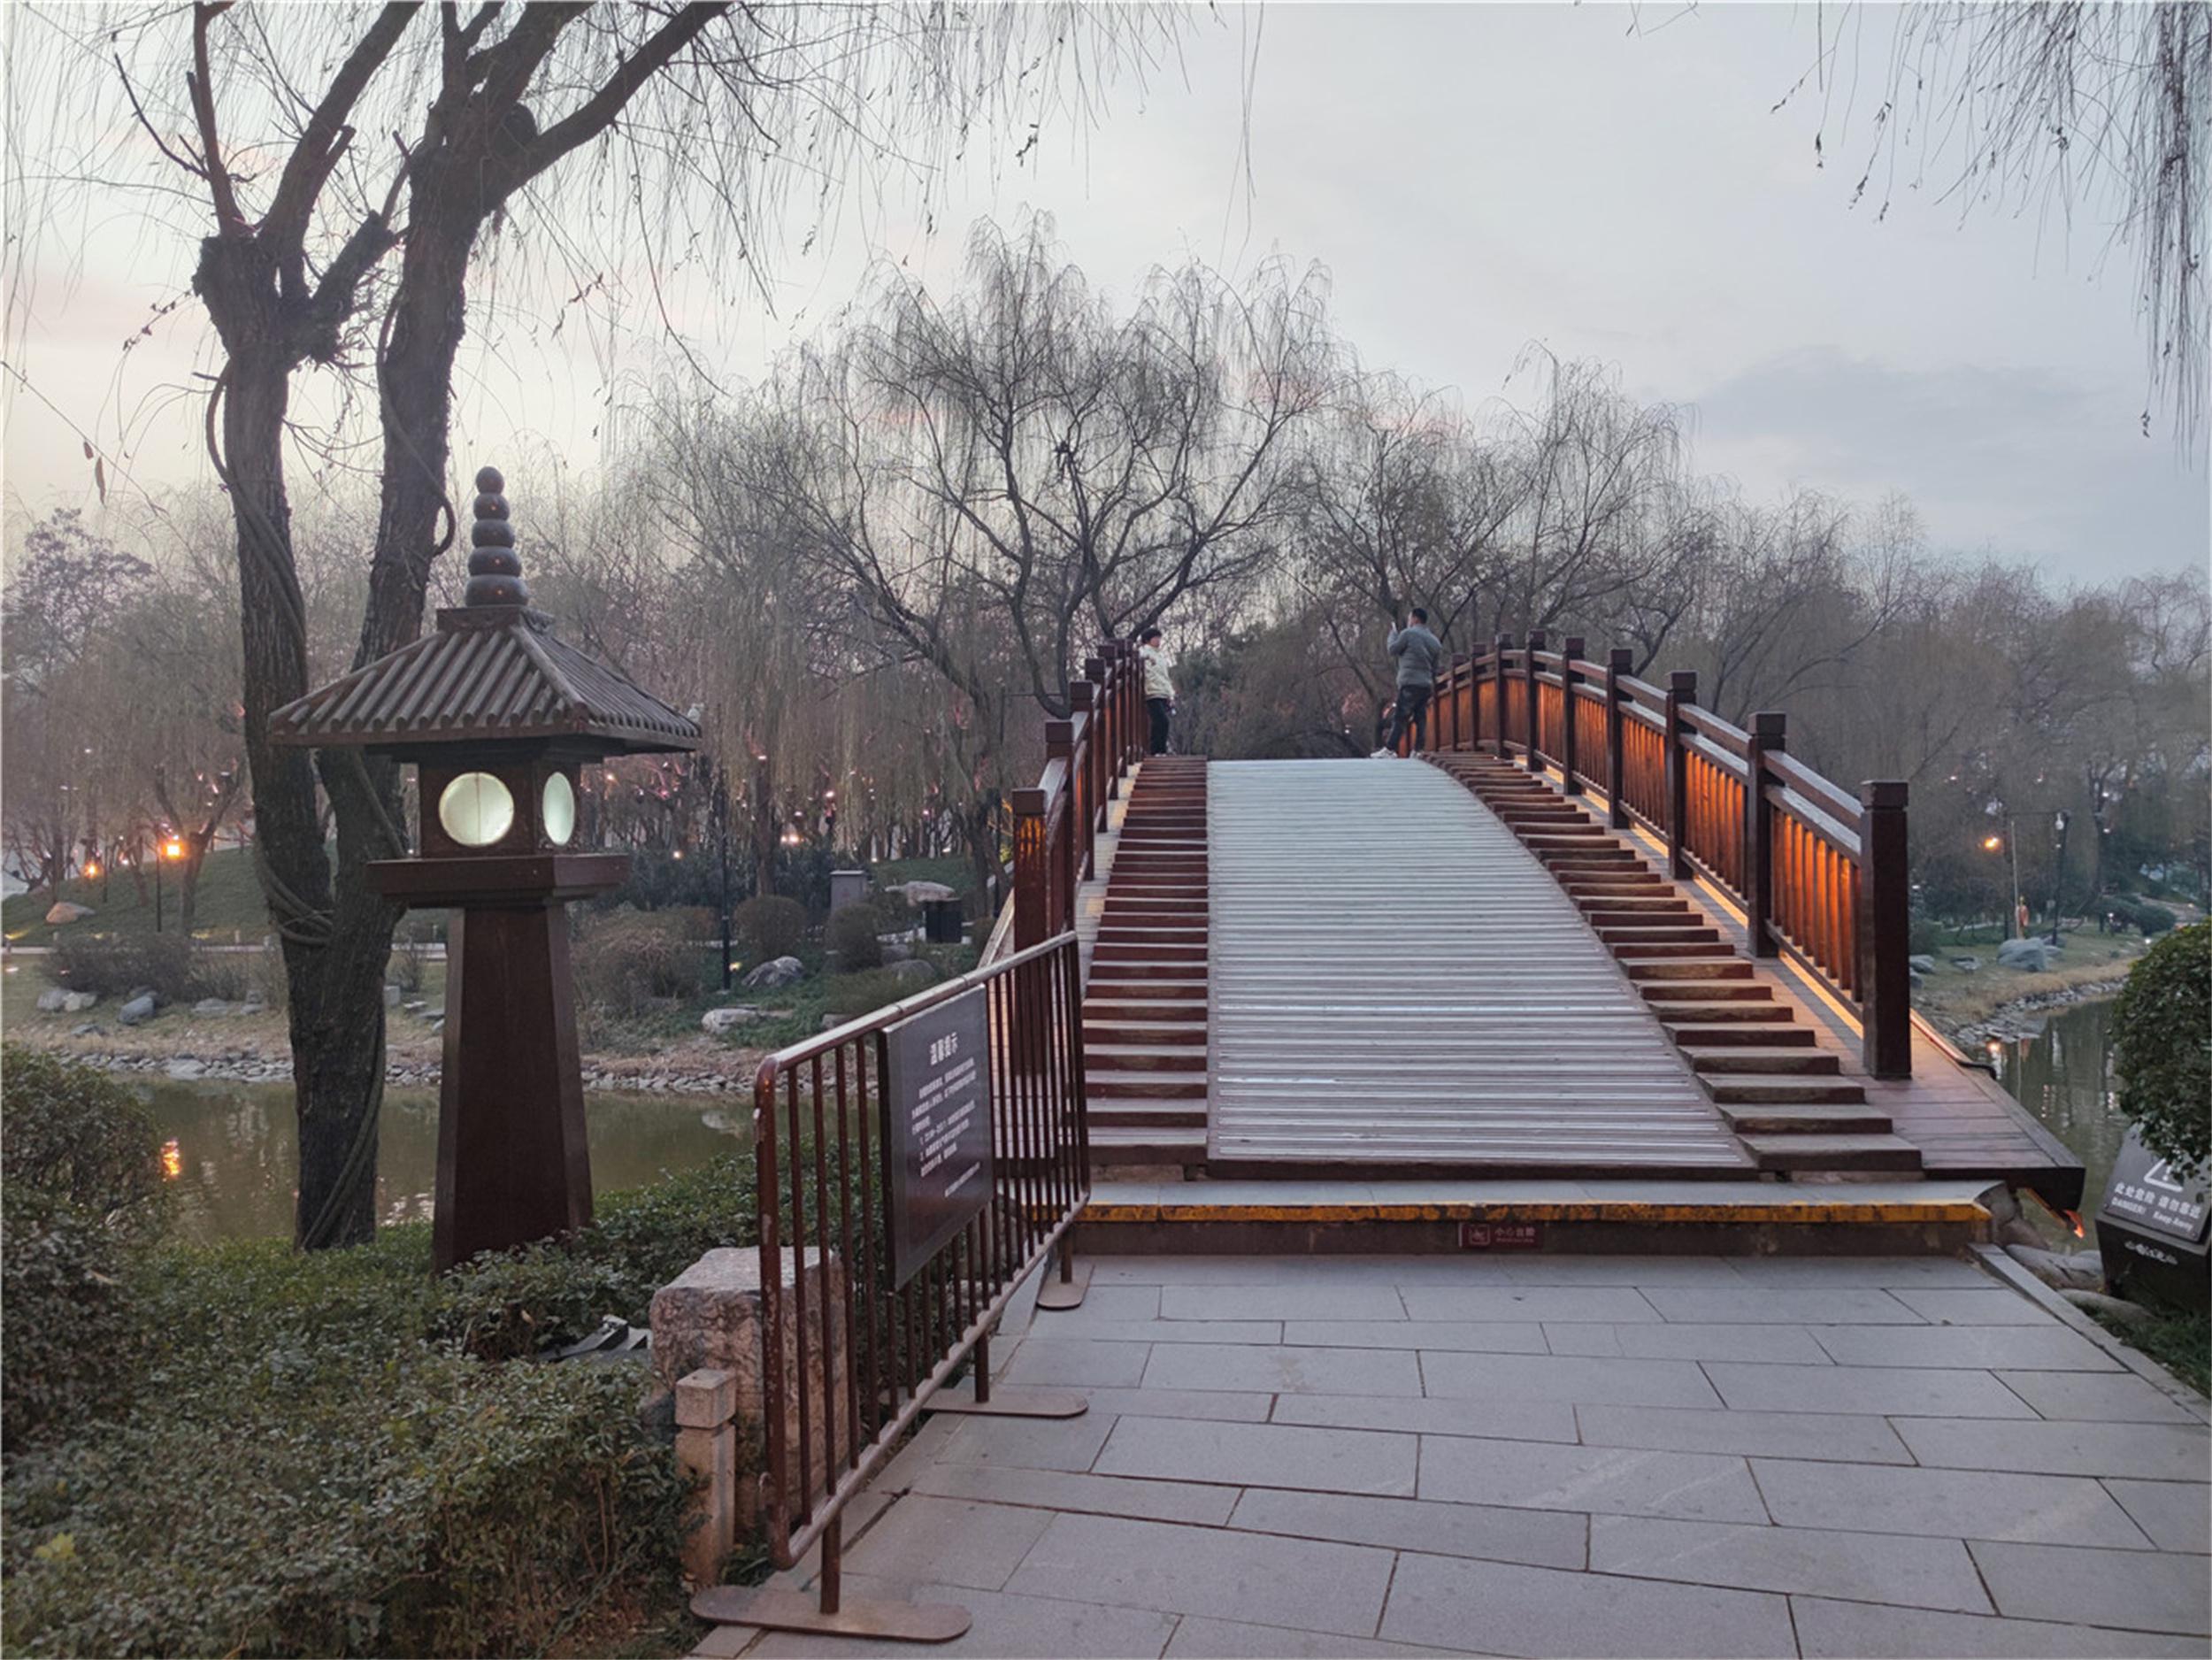 西安曲江的杜邑遗址公园和唐苑 西安有许多公园和景点,其中曲江池是最